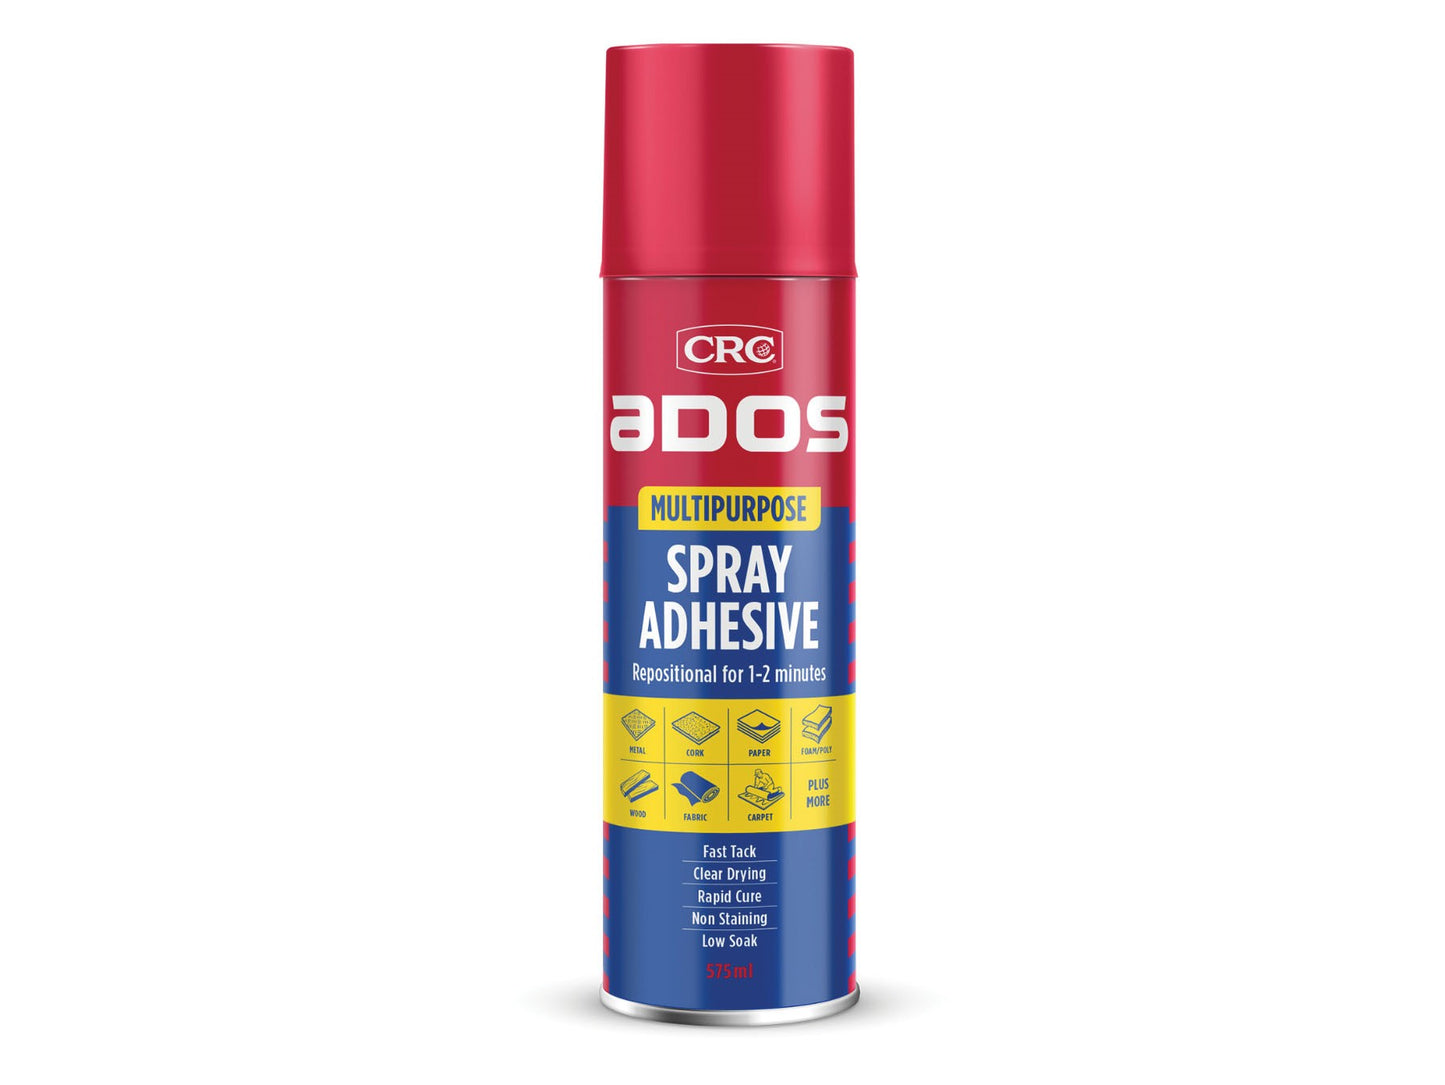 CRC ADOS Multi Purpose Spray Adhesive